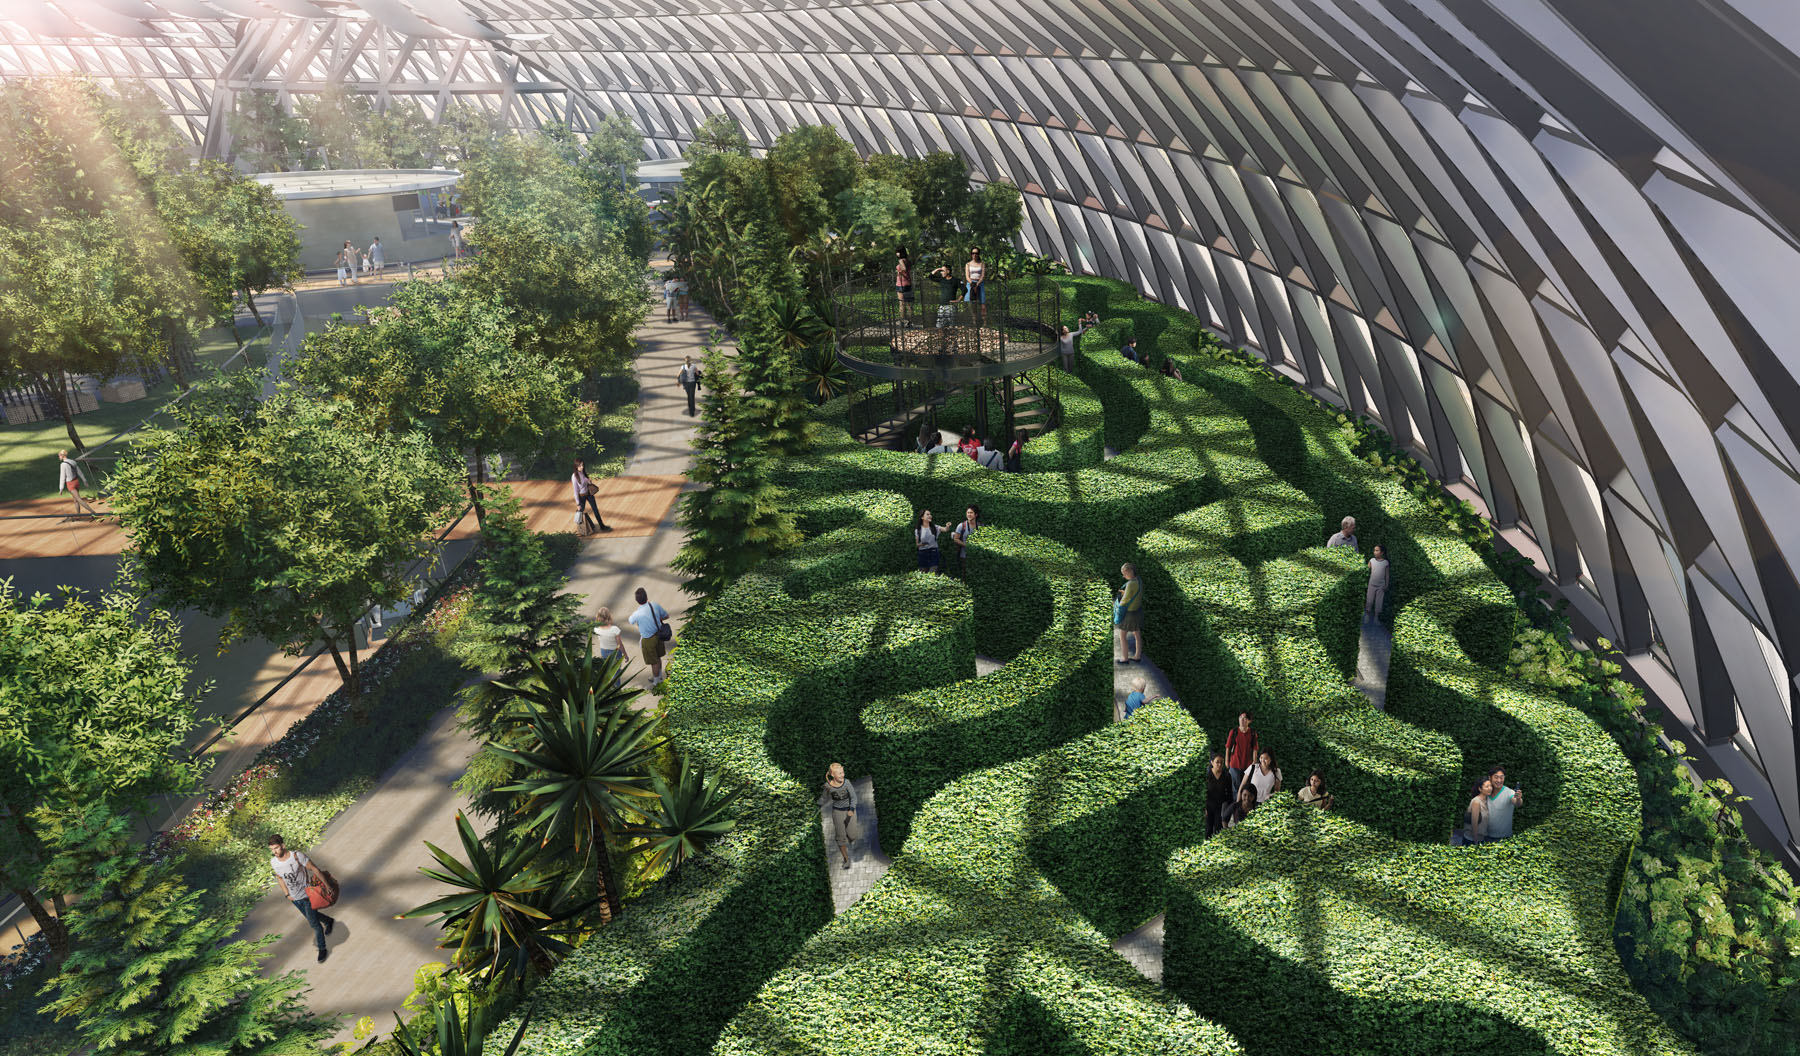 En el Canopy Park (parque dosel) se sitúa ahora el laberinto de setos más grande de todo Singapur.  